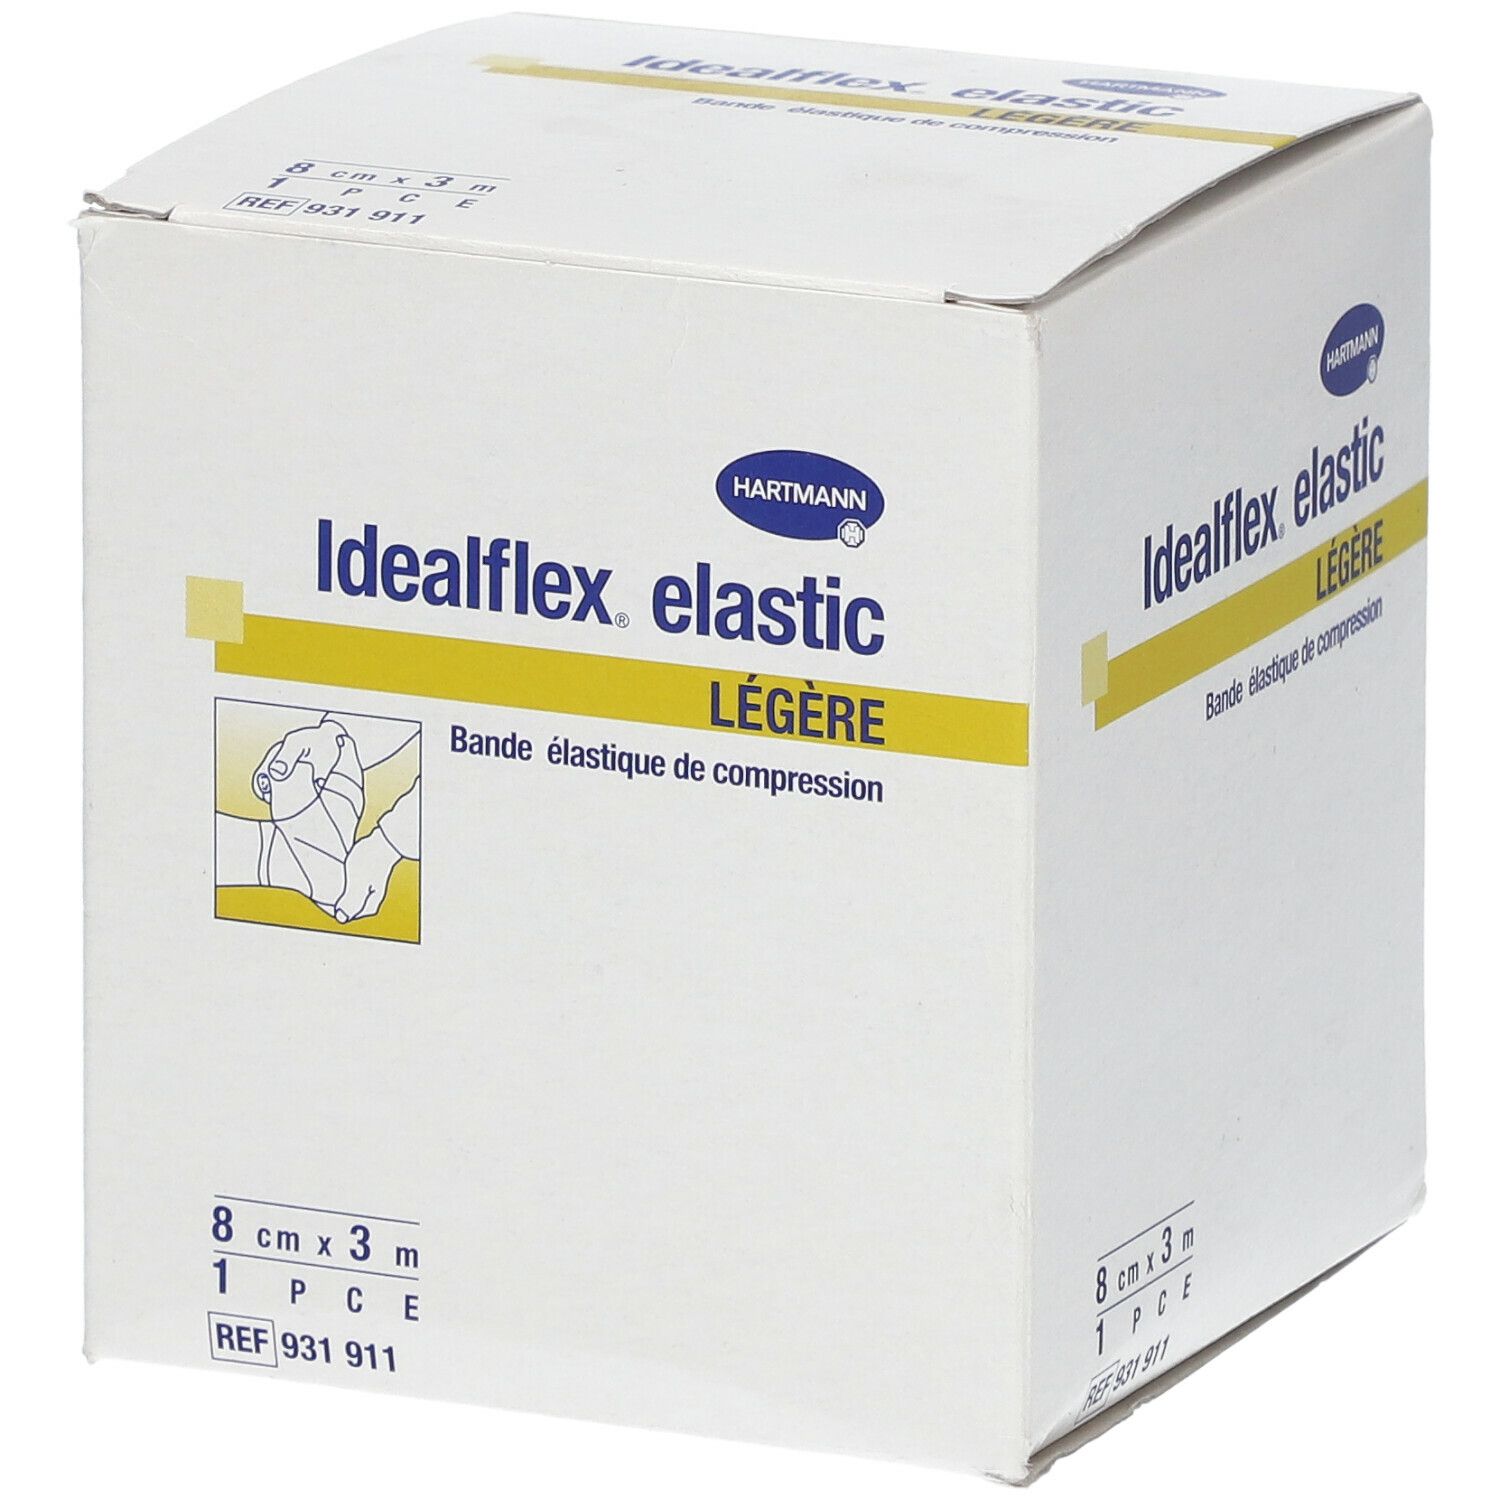 Idealflex® elastic Légère 8 cm x 3 m